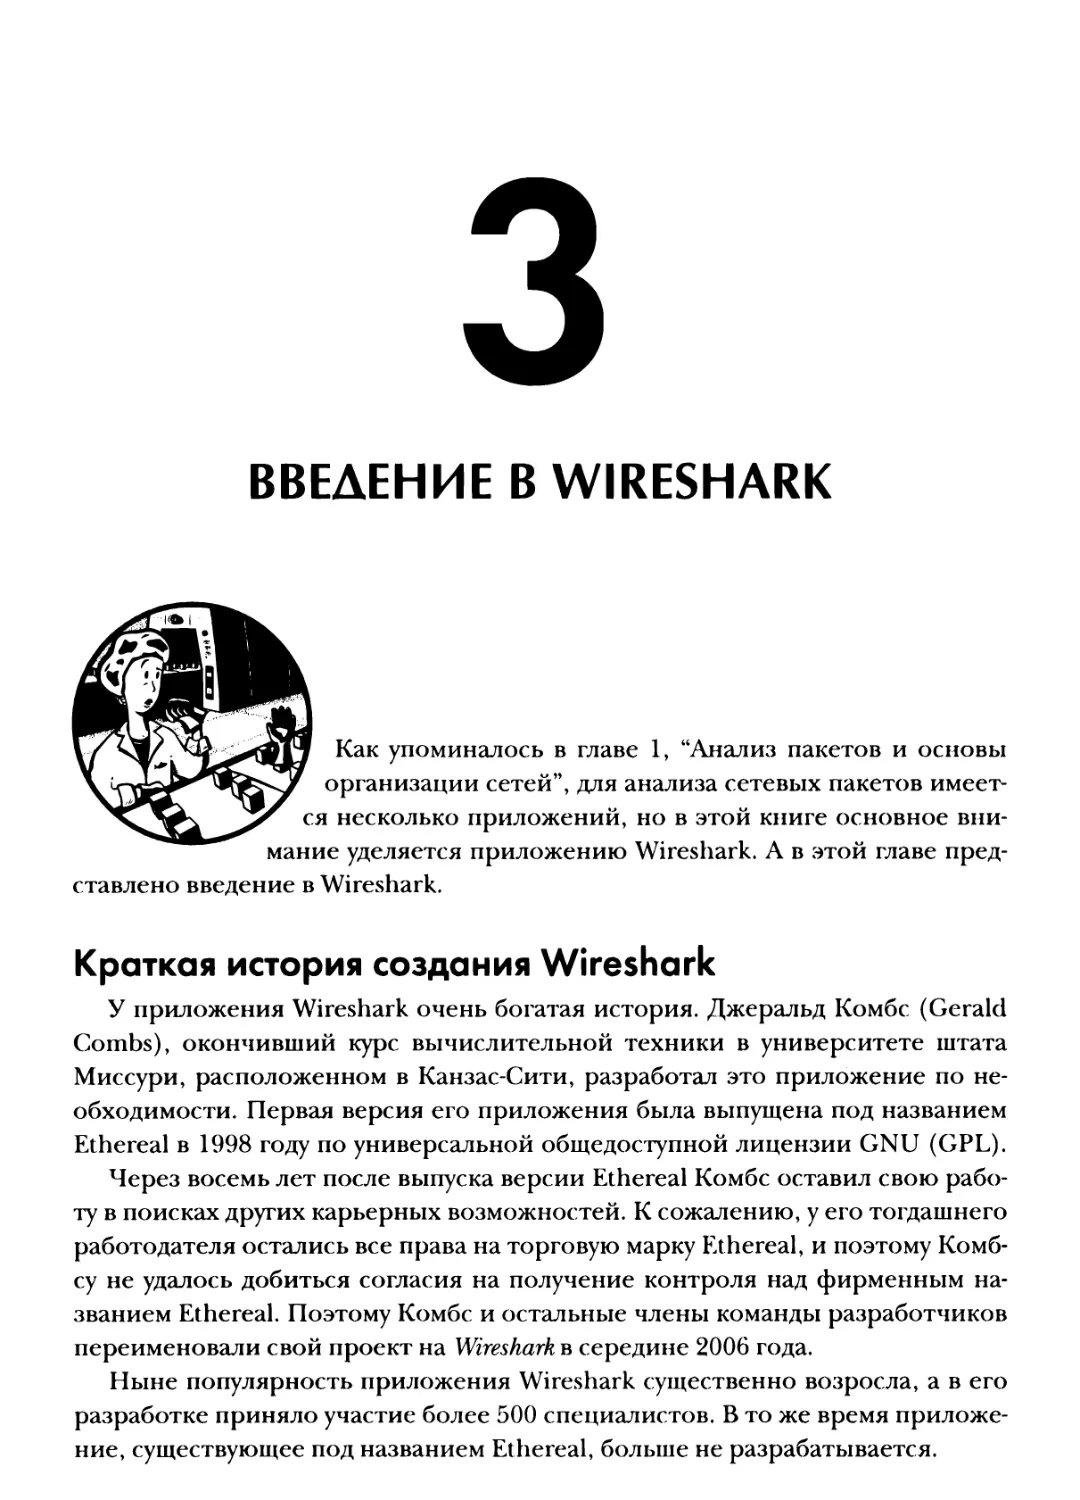 Глава 3. Введение в Wireshark
Краткая история создания Wireshark